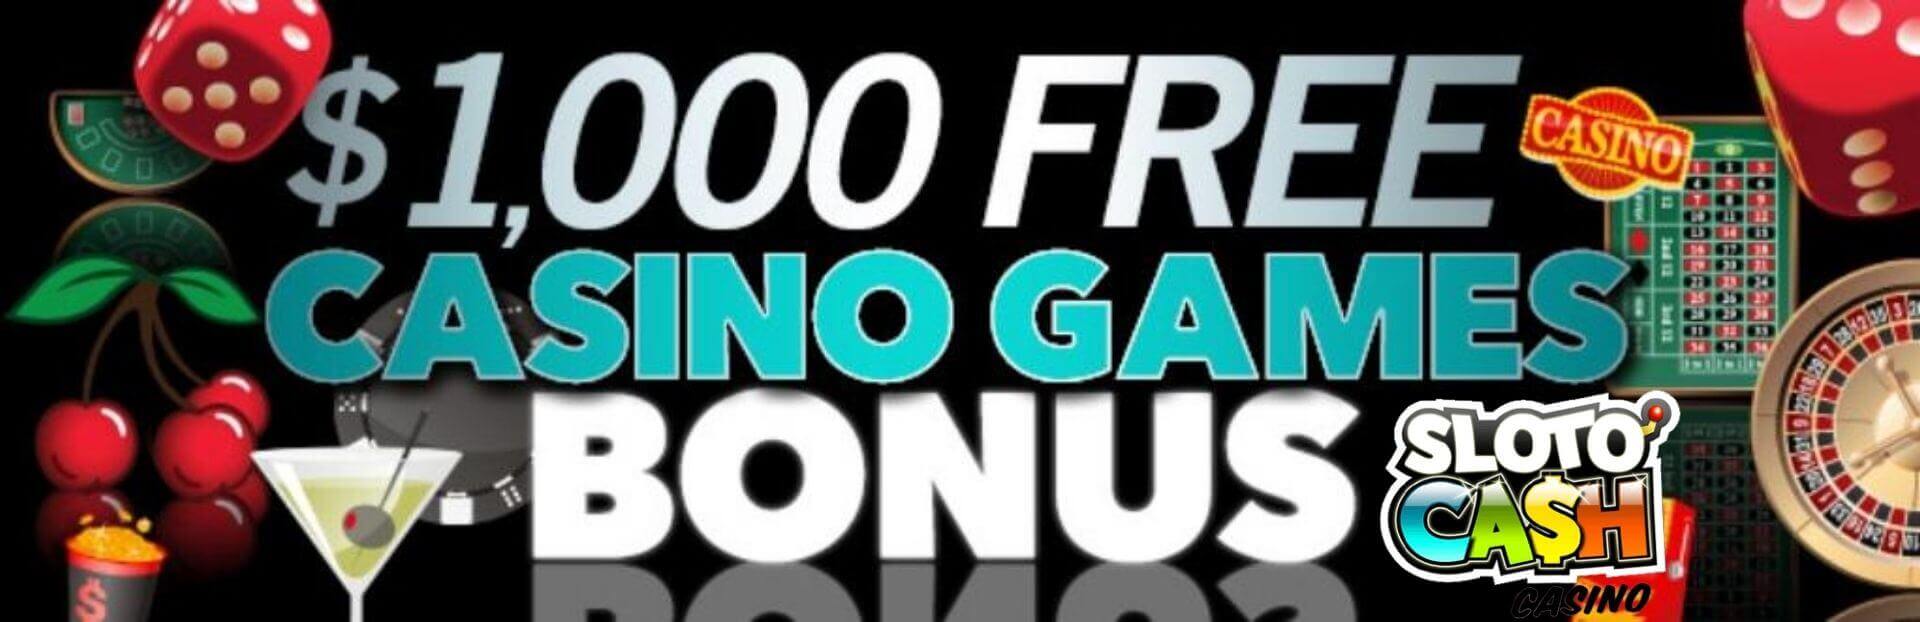 sloto cash casino $1000 casino games bonus